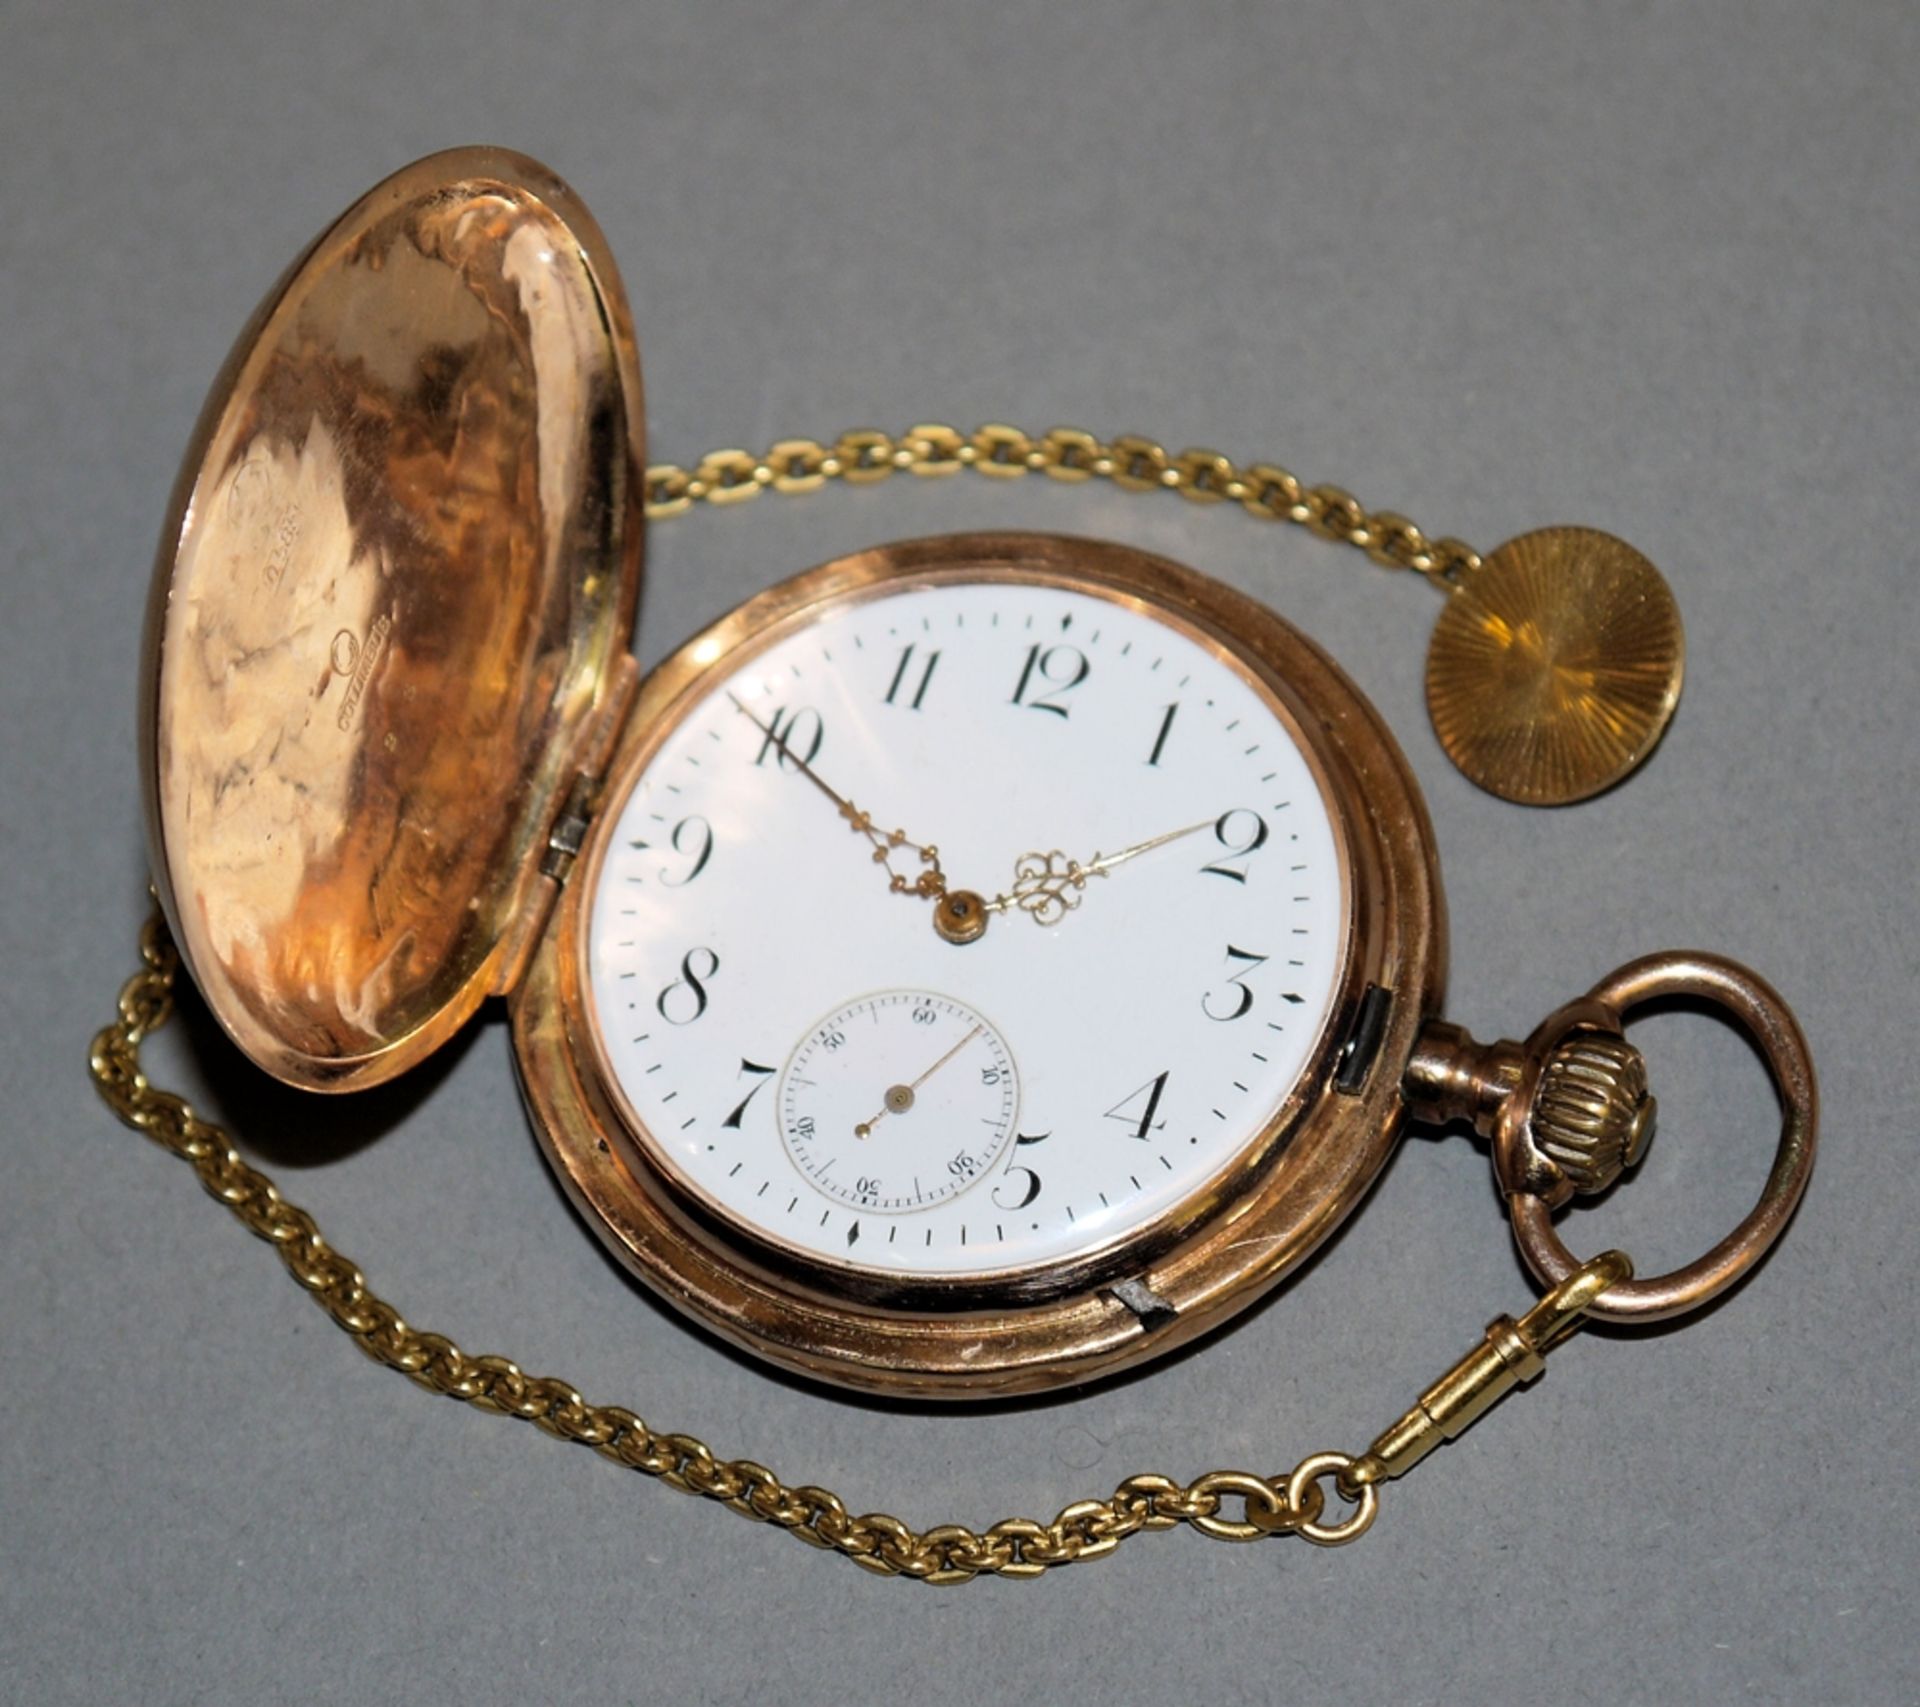 Herrentaschenuhr Columbus um 1900 mit Uhrenkette, Gold